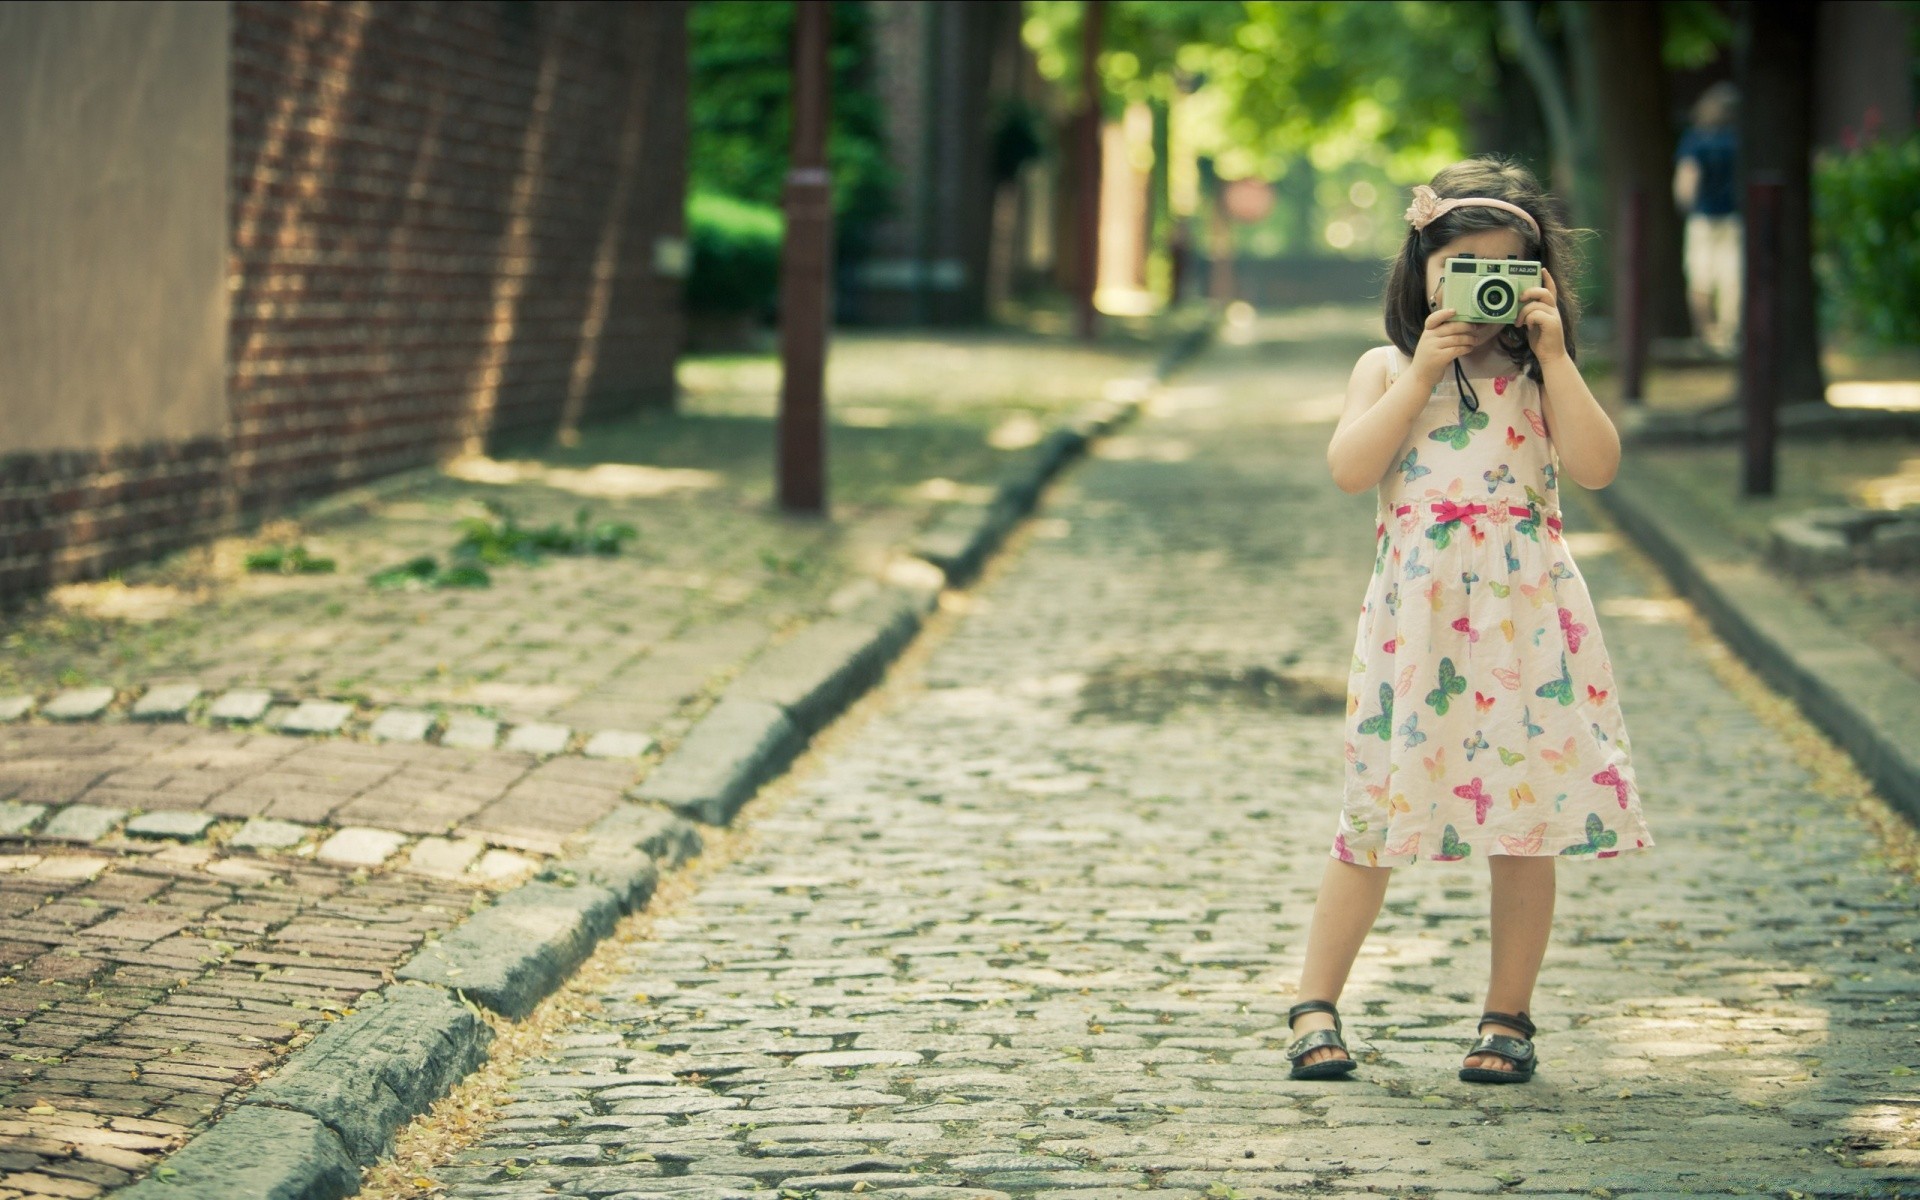 дети девушка ребенок один портрет на открытом воздухе удовольствие улица человек лето красивые улыбка парк женщина образ жизни молодой платье